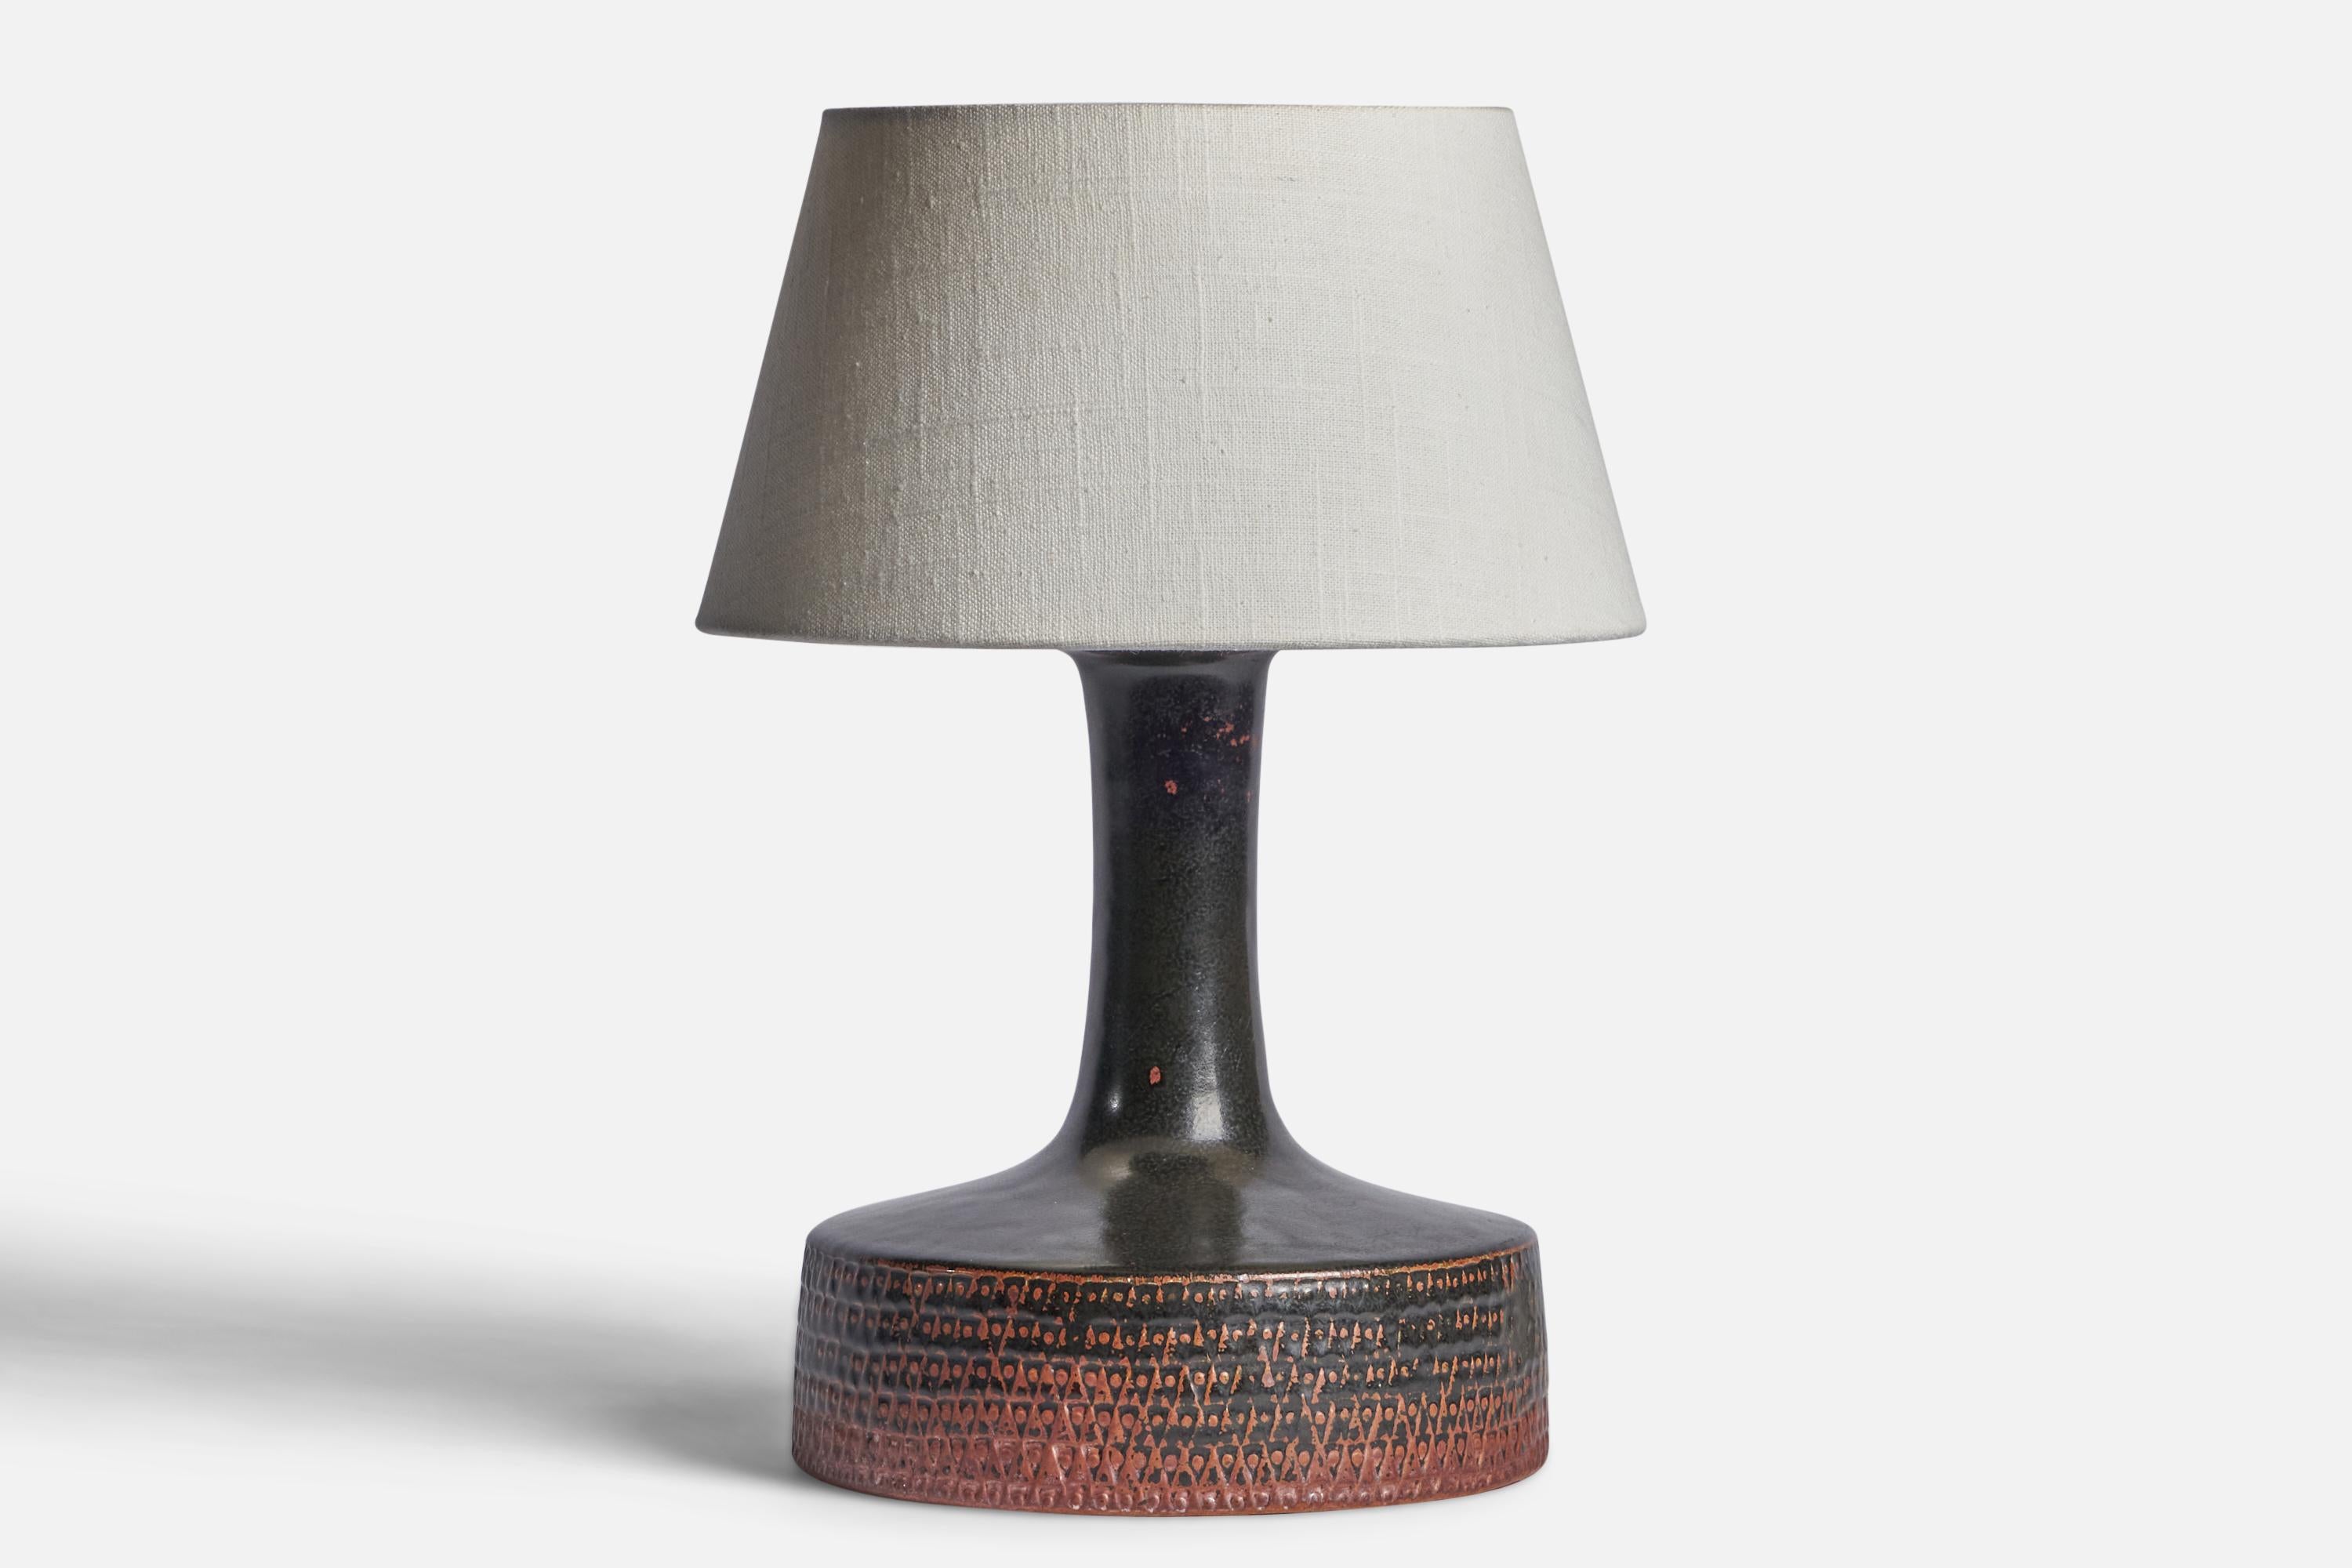 Lampe de table en grès incisé noir et orange, conçue par Stig Lindberg et produite par Gustavsberg, Suède, années 1950.

Dimensions de la lampe (pouces) : 11